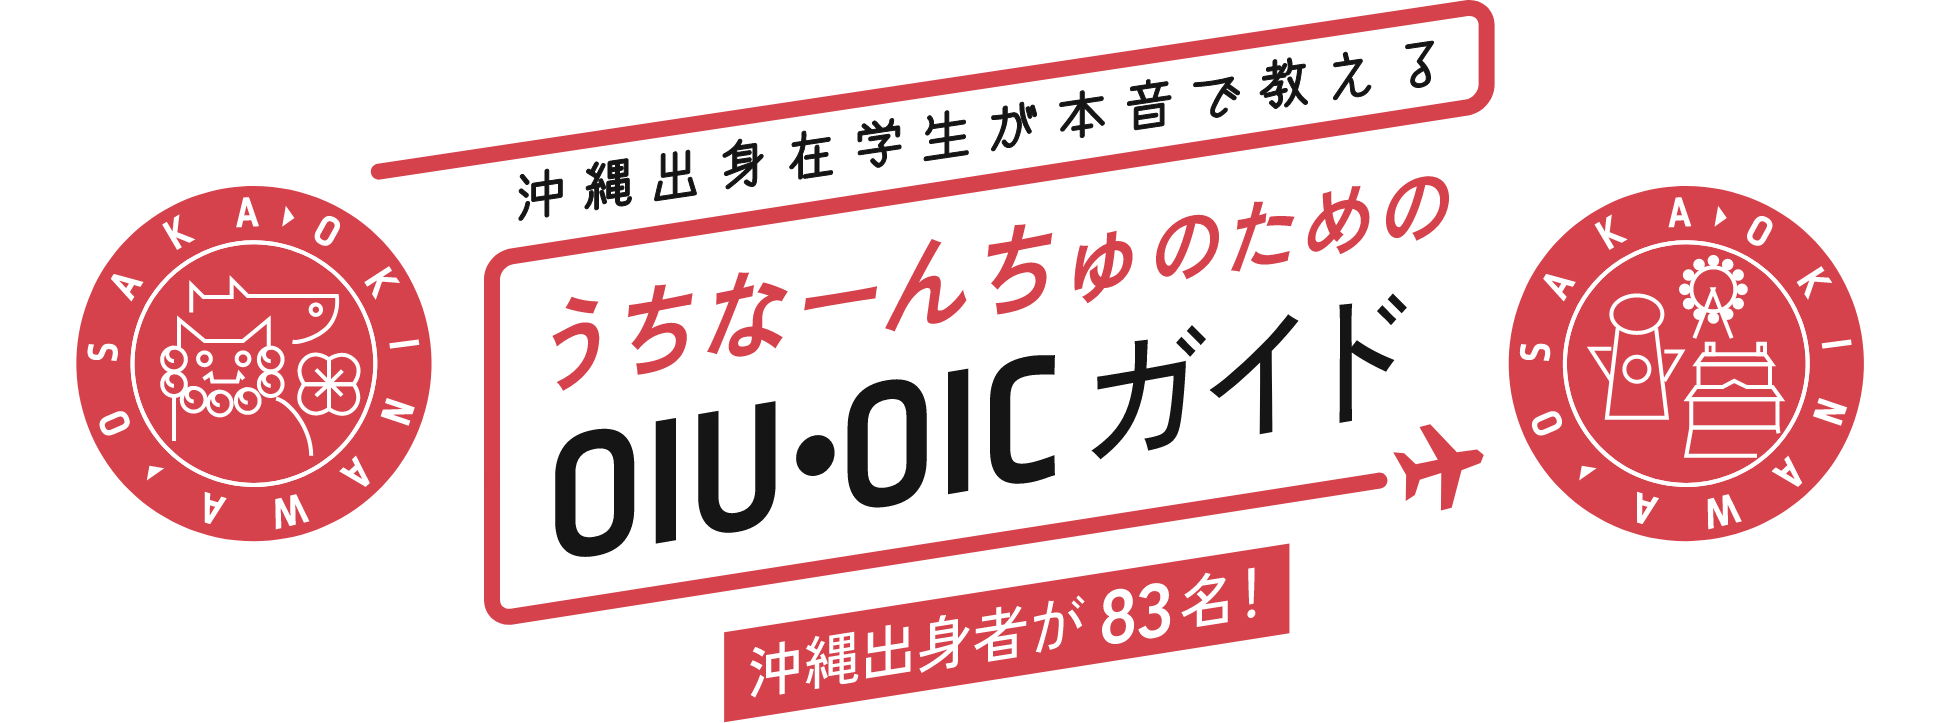 沖縄出身在学生が本音で教える うちなーんちゅのためのOIU・OICガイド 沖縄出身者が83名!